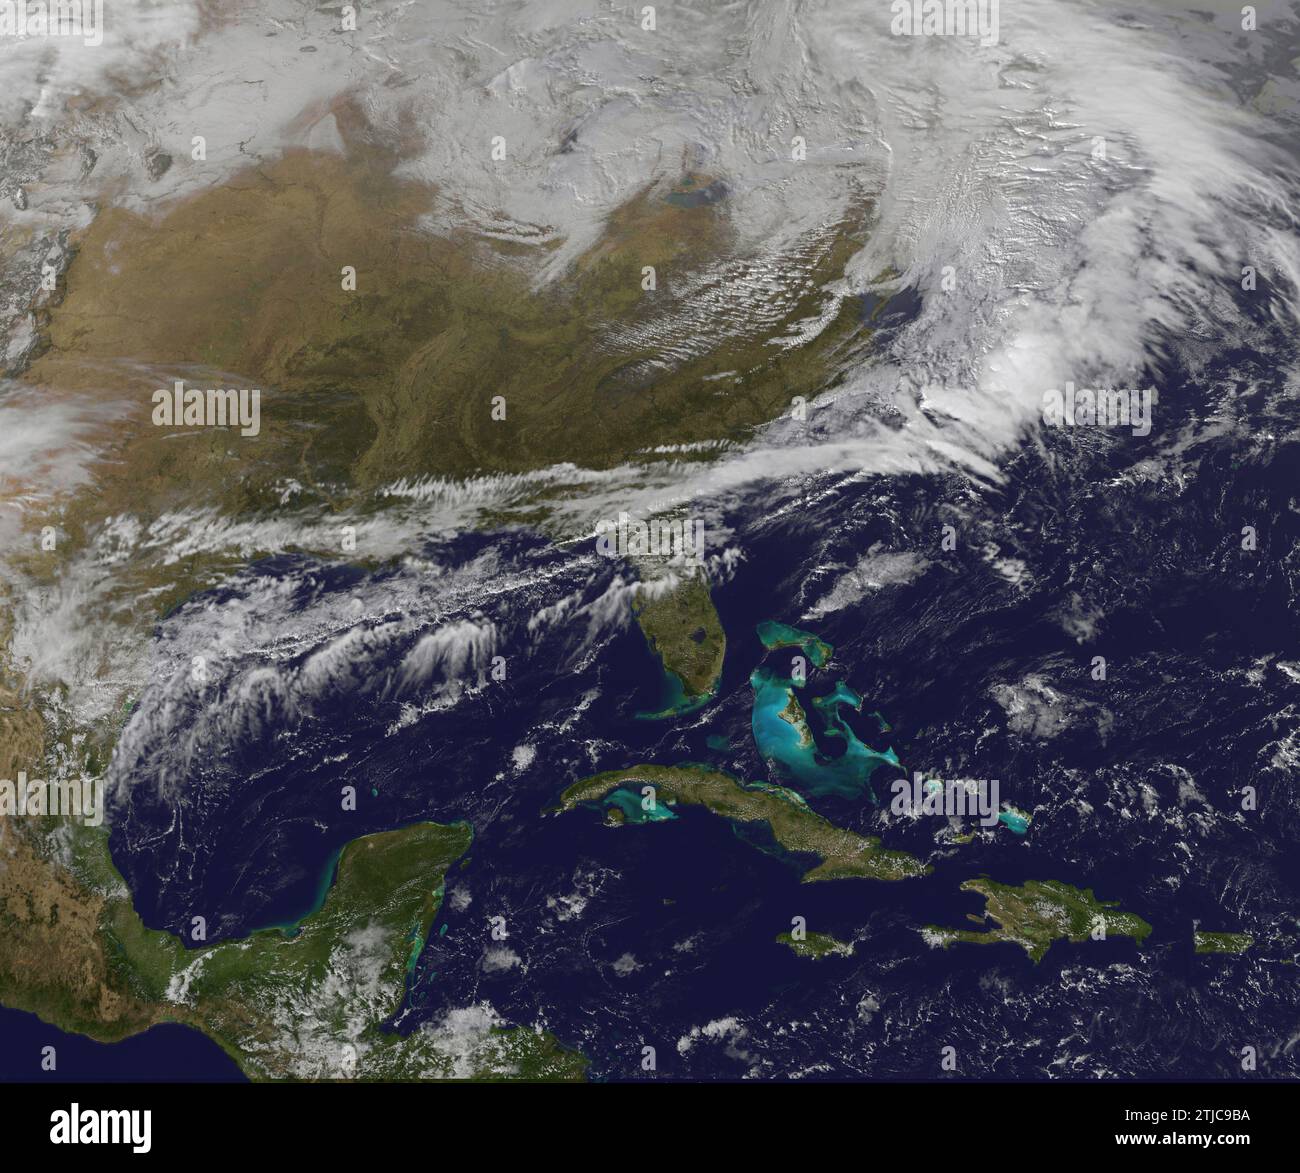 Vue satellite de tempête de neige pour le ne USA avec la vue ici montrant aussi l'Amérique centrale, Cuba et les Caraïbes. Le satellite GOES-East de la NOAA fournit des données infrarouges et visibles de la moitié orientale des États-Unis au projet GOES DE la NASA-NOAA, au centre de vol spatial Goddard de la NASA, ces données sont transformées en visualisations. Le projet GOES DE la NASA-NOAA a créé une image visible de la tempête qui touchait déjà le nord-est des États-Unis le 29 décembre 2016. À cette époque, le centre de basse pression se trouvait au nord des Grands Lacs et se déplaçait vers l'est. Une version optimisée d'une image originale de la NASA / crédit : NASA Banque D'Images